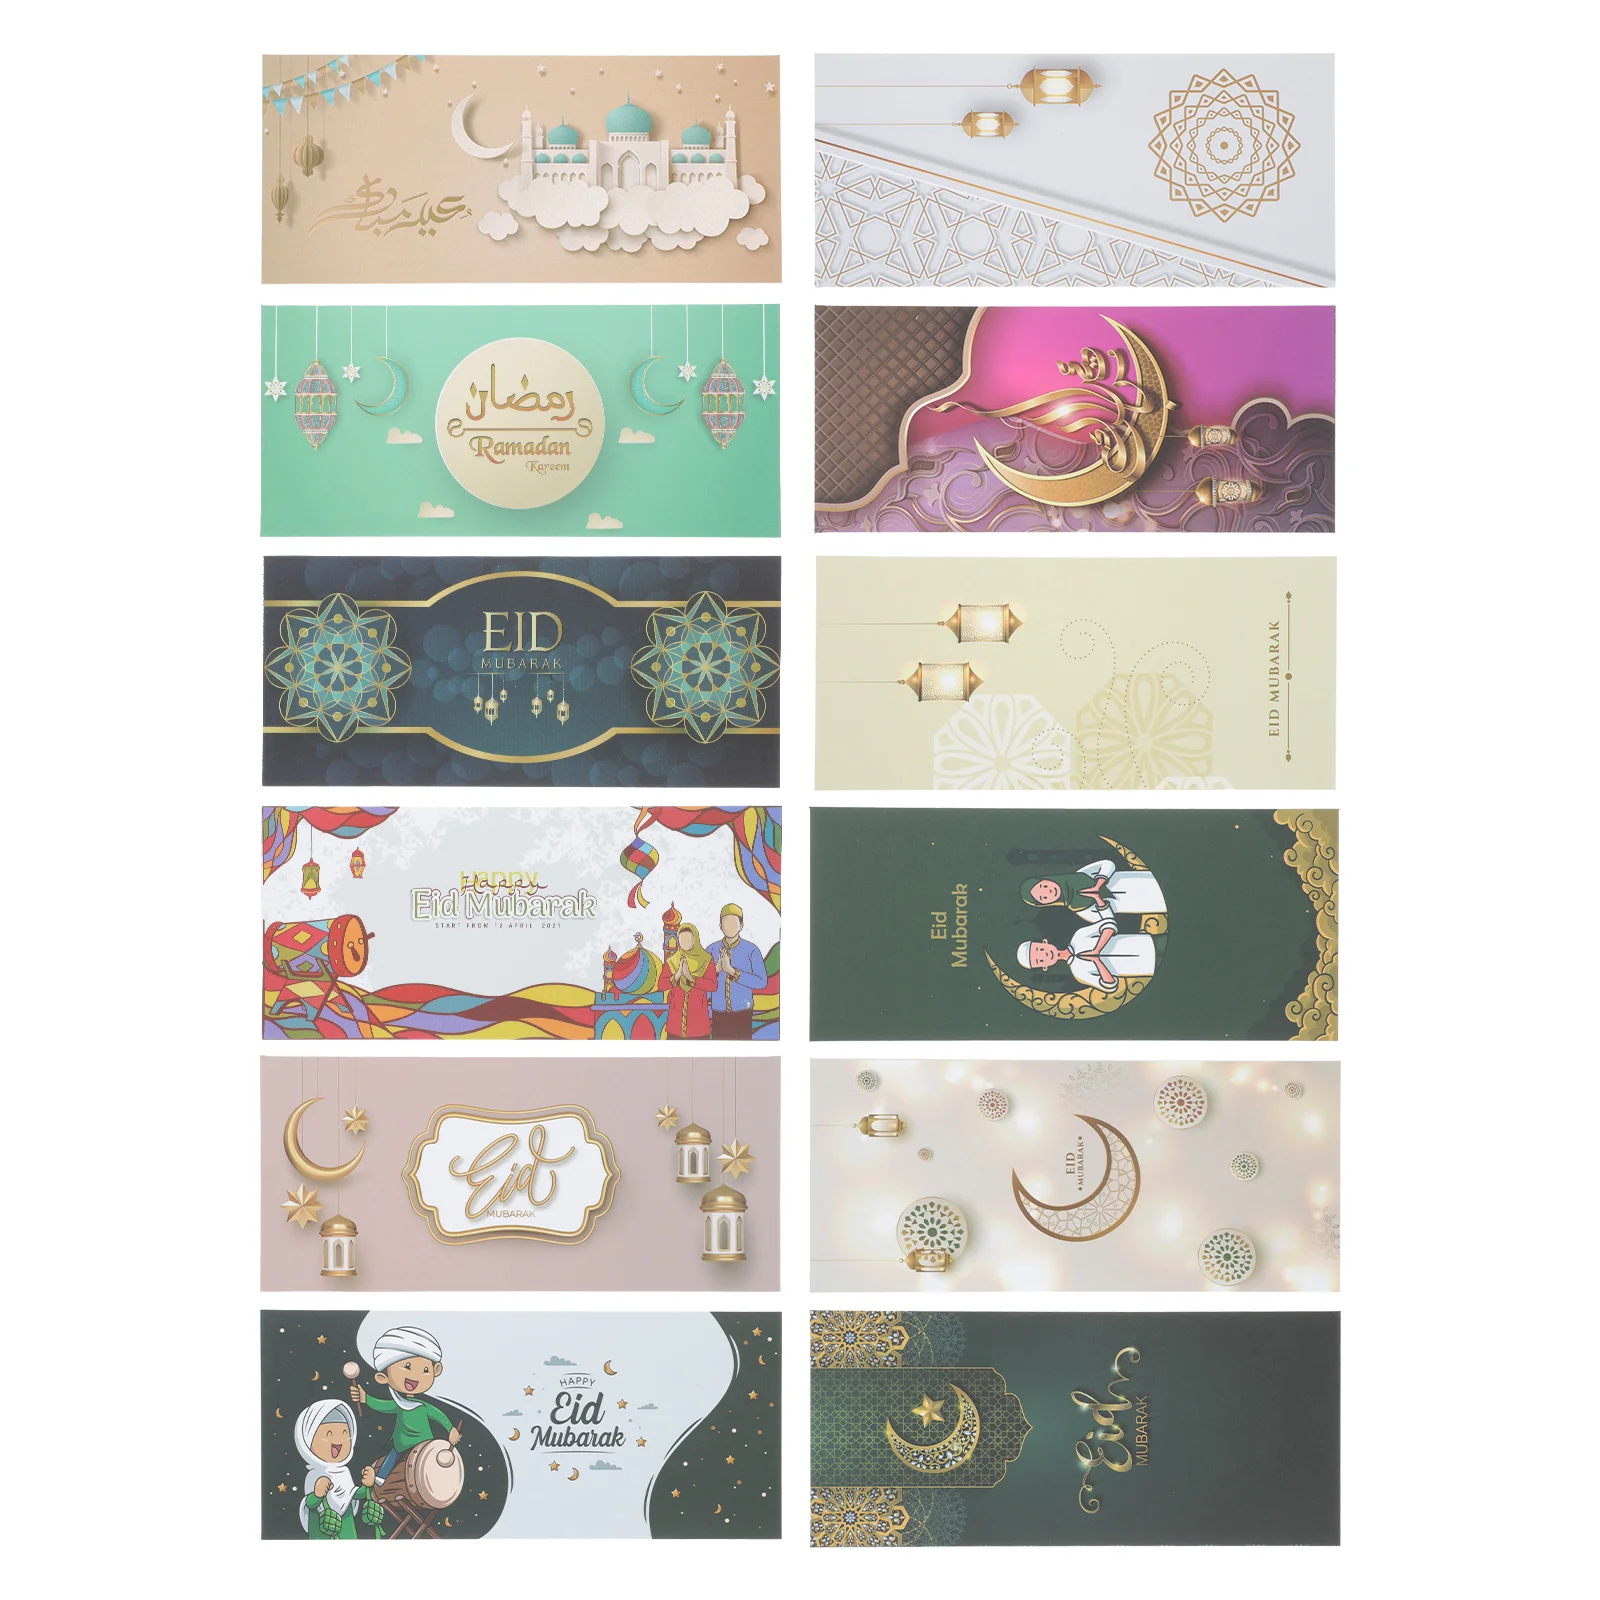 

Eid Mubarak конверты поздравительные открытки: 12 шт. Рамадана бумага конверты из крафт-бумаги бумажные праздничные поздравительные открытки конверты для благословения